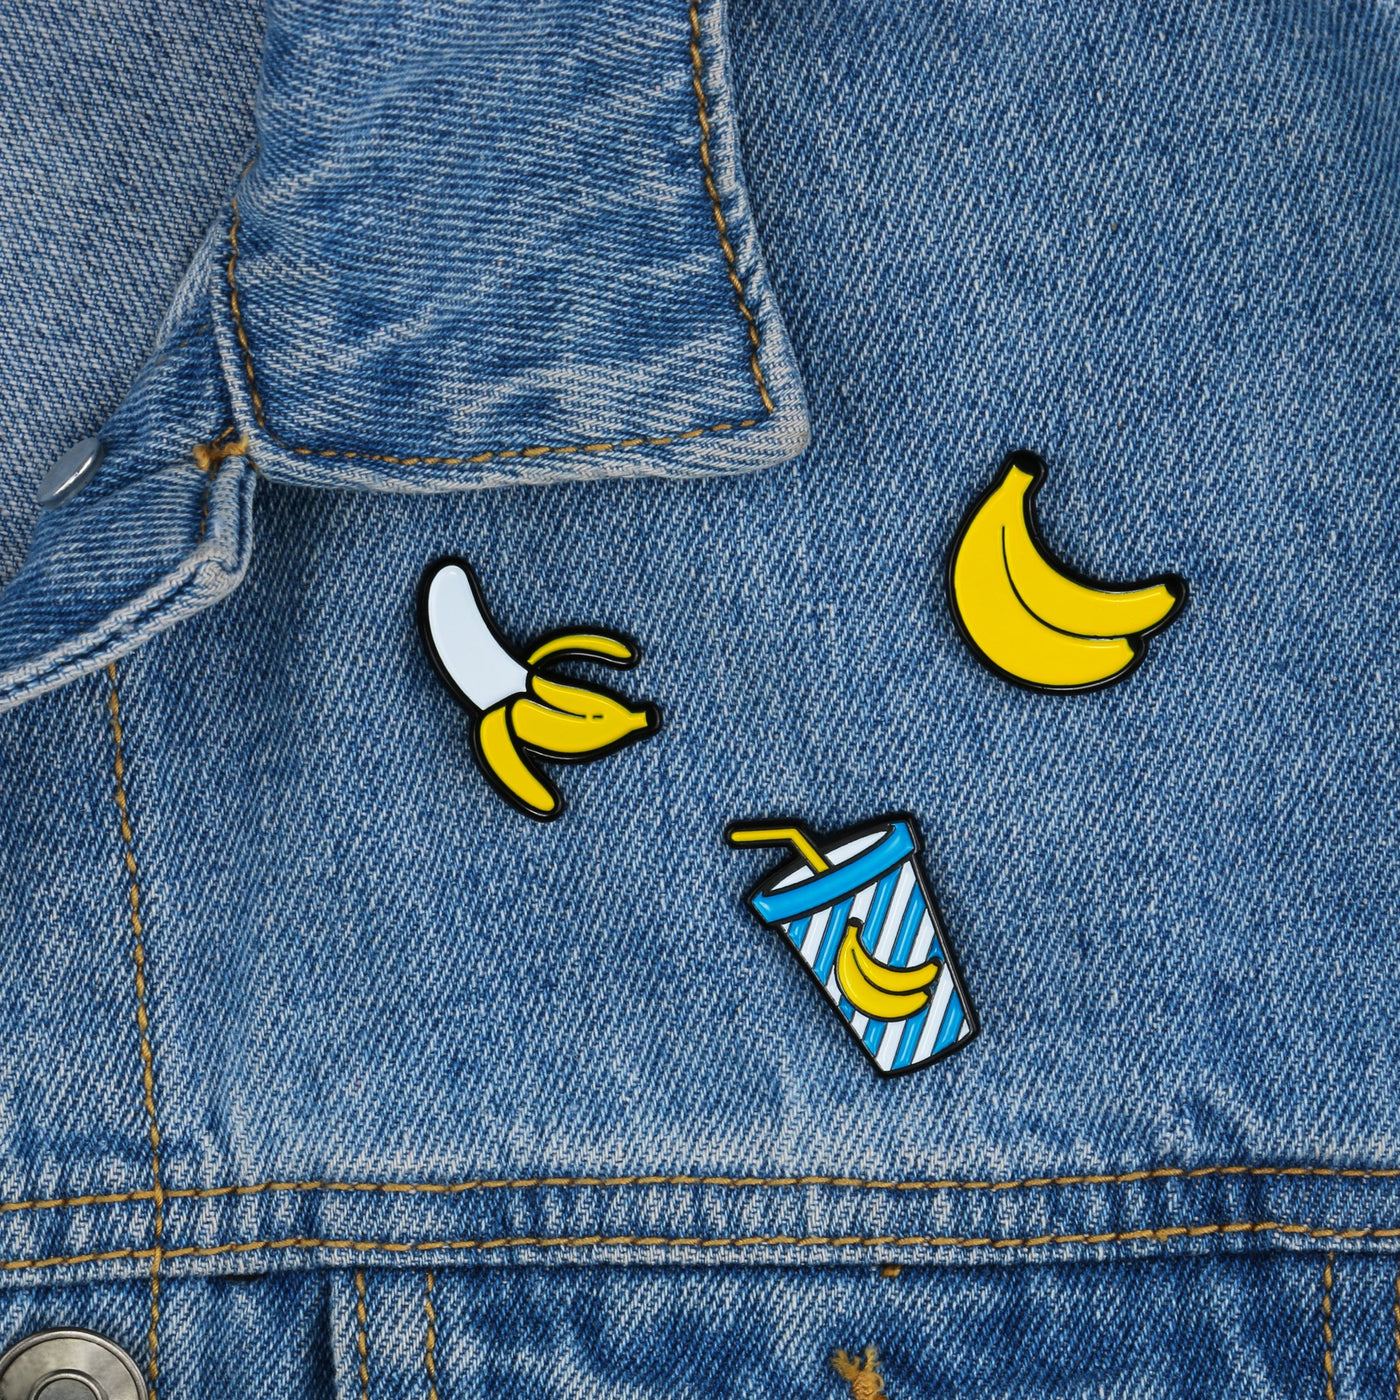 Banana Pin Badges